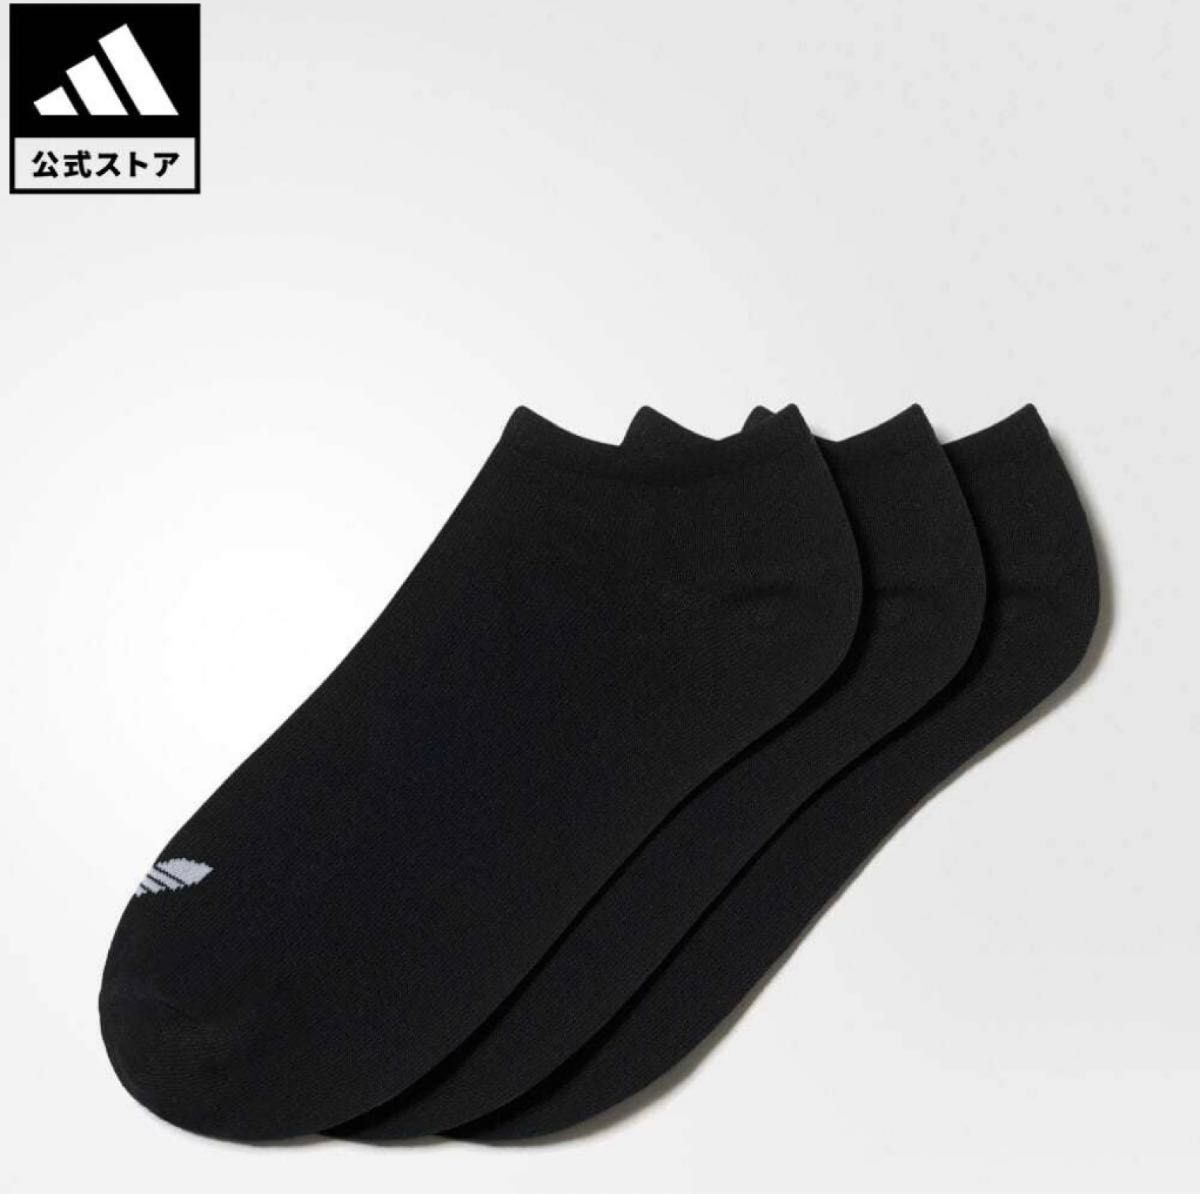 アディダス adidas オリジナルス 靴下 ソックス [TREFOIL LINER SOCKS] オリジナルス 子供用靴下